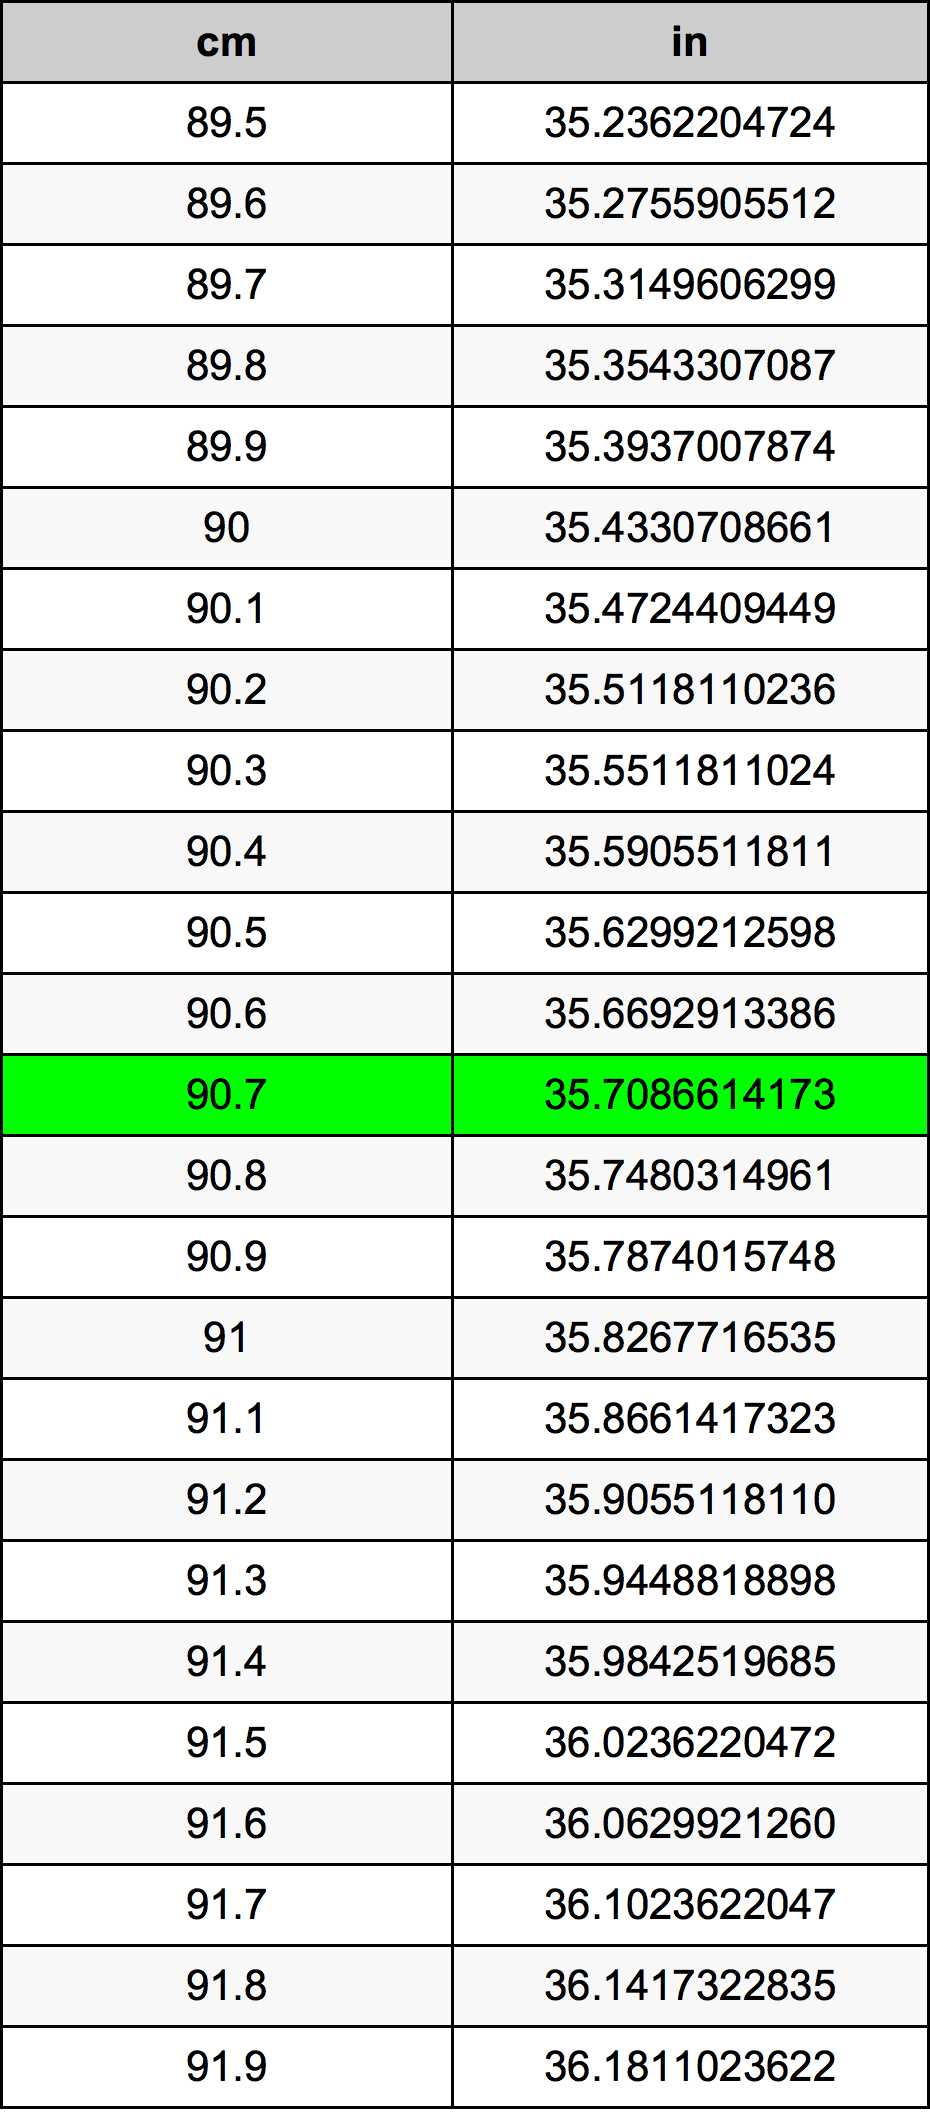 90.7 Centiméter átszámítási táblázat